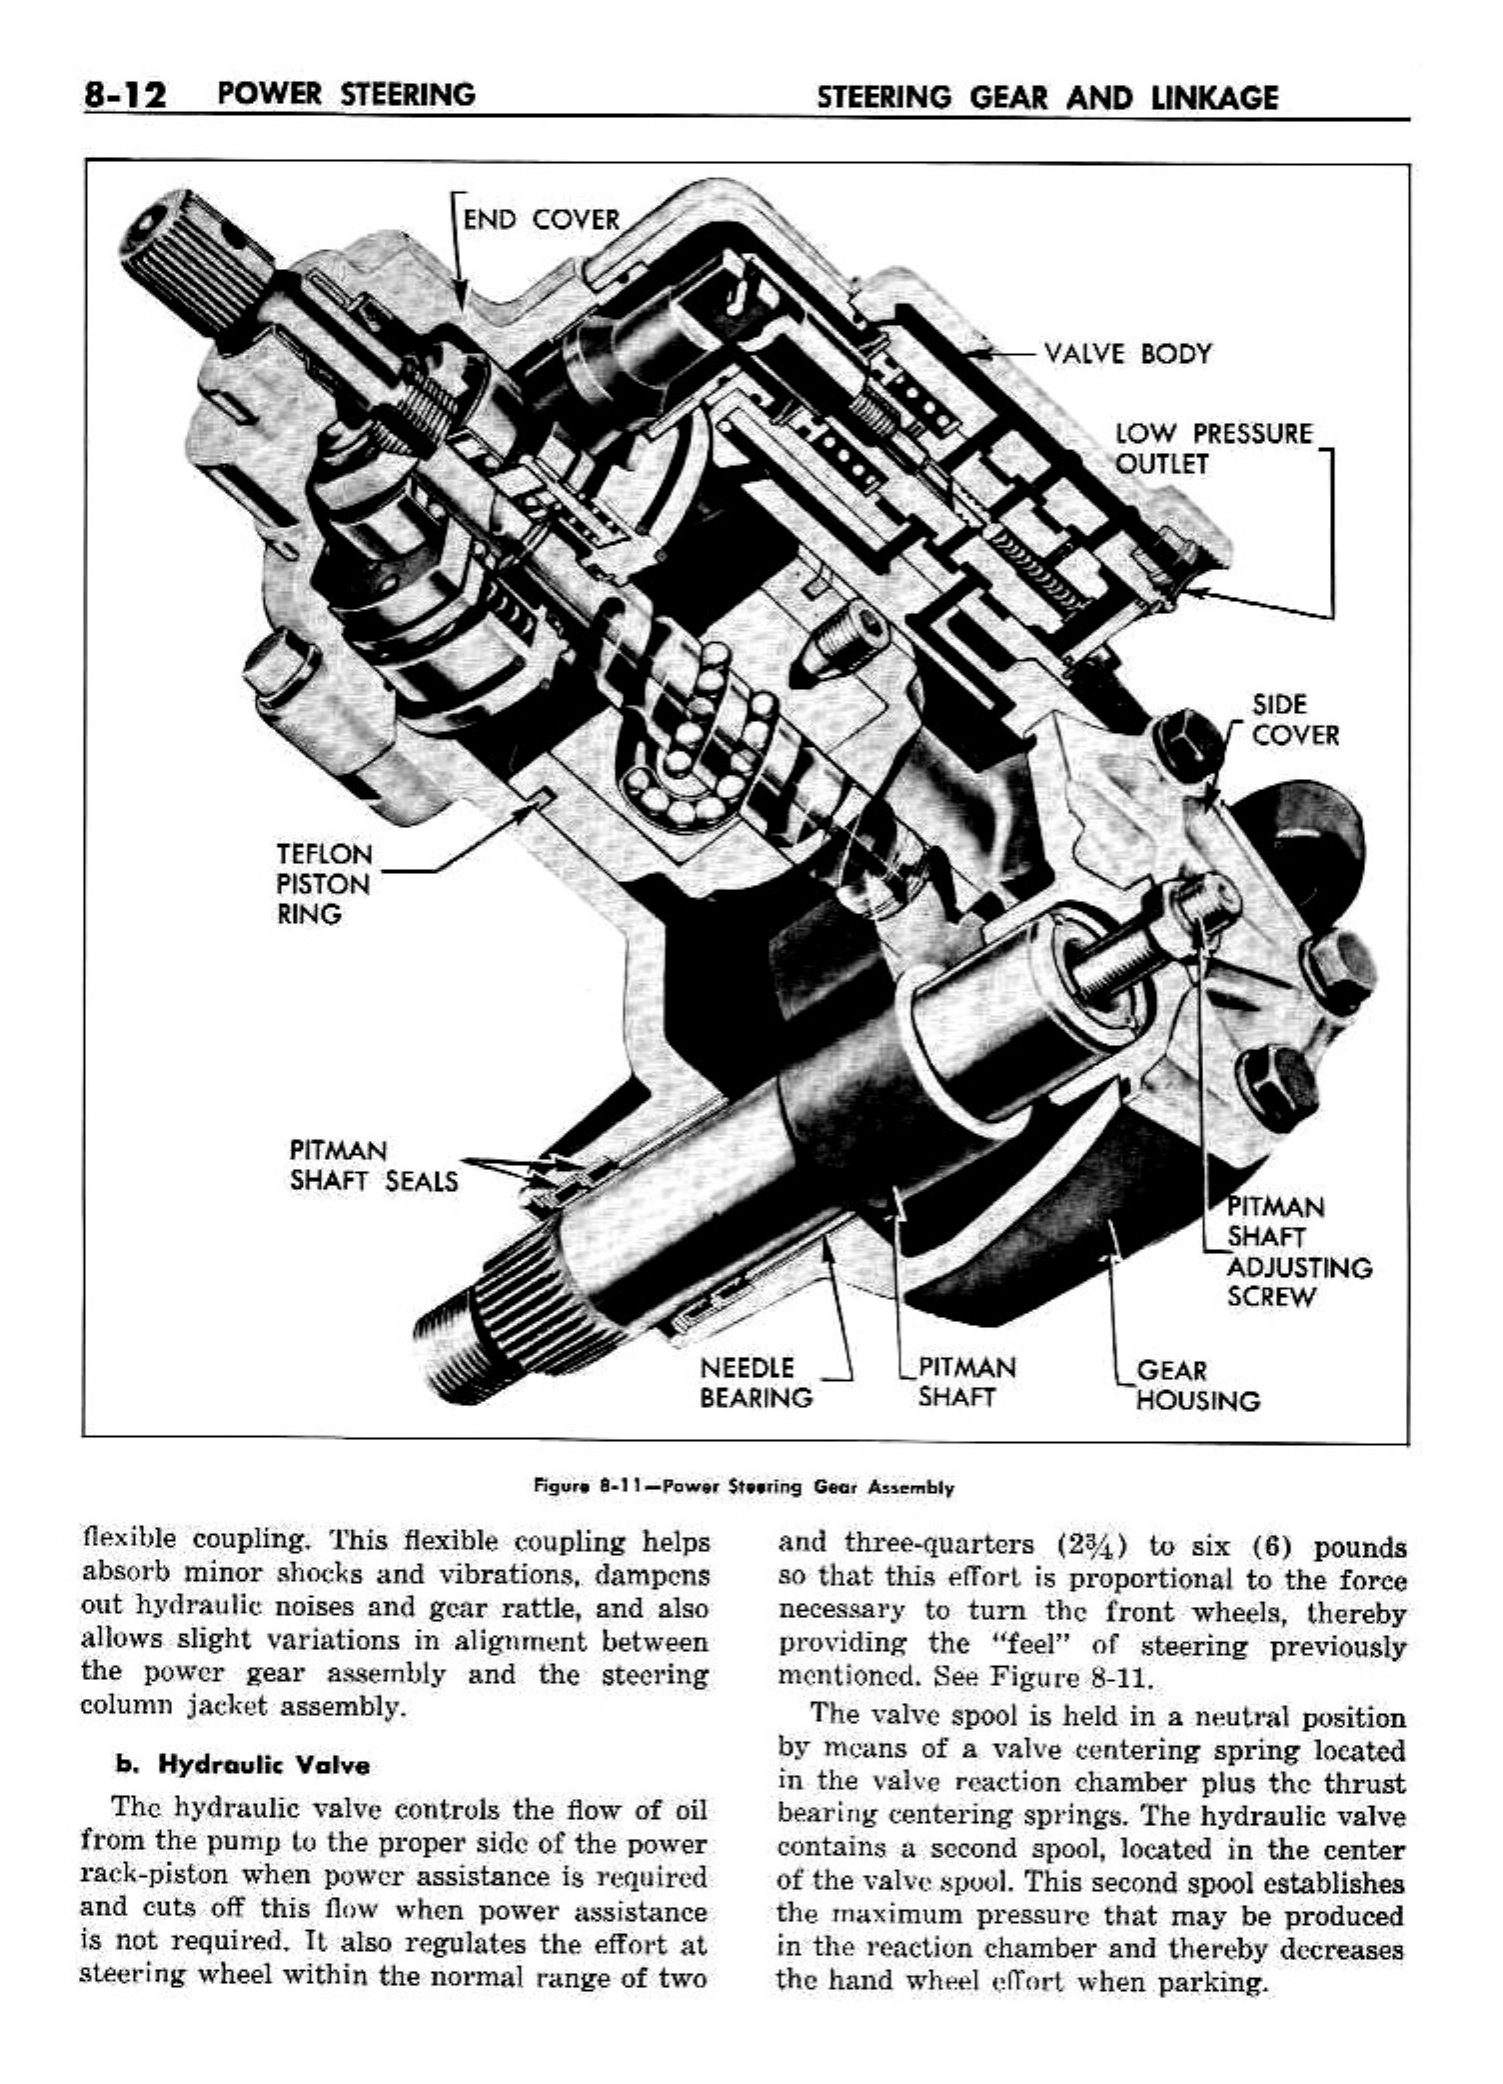 n_09 1958 Buick Shop Manual - Steering_12.jpg